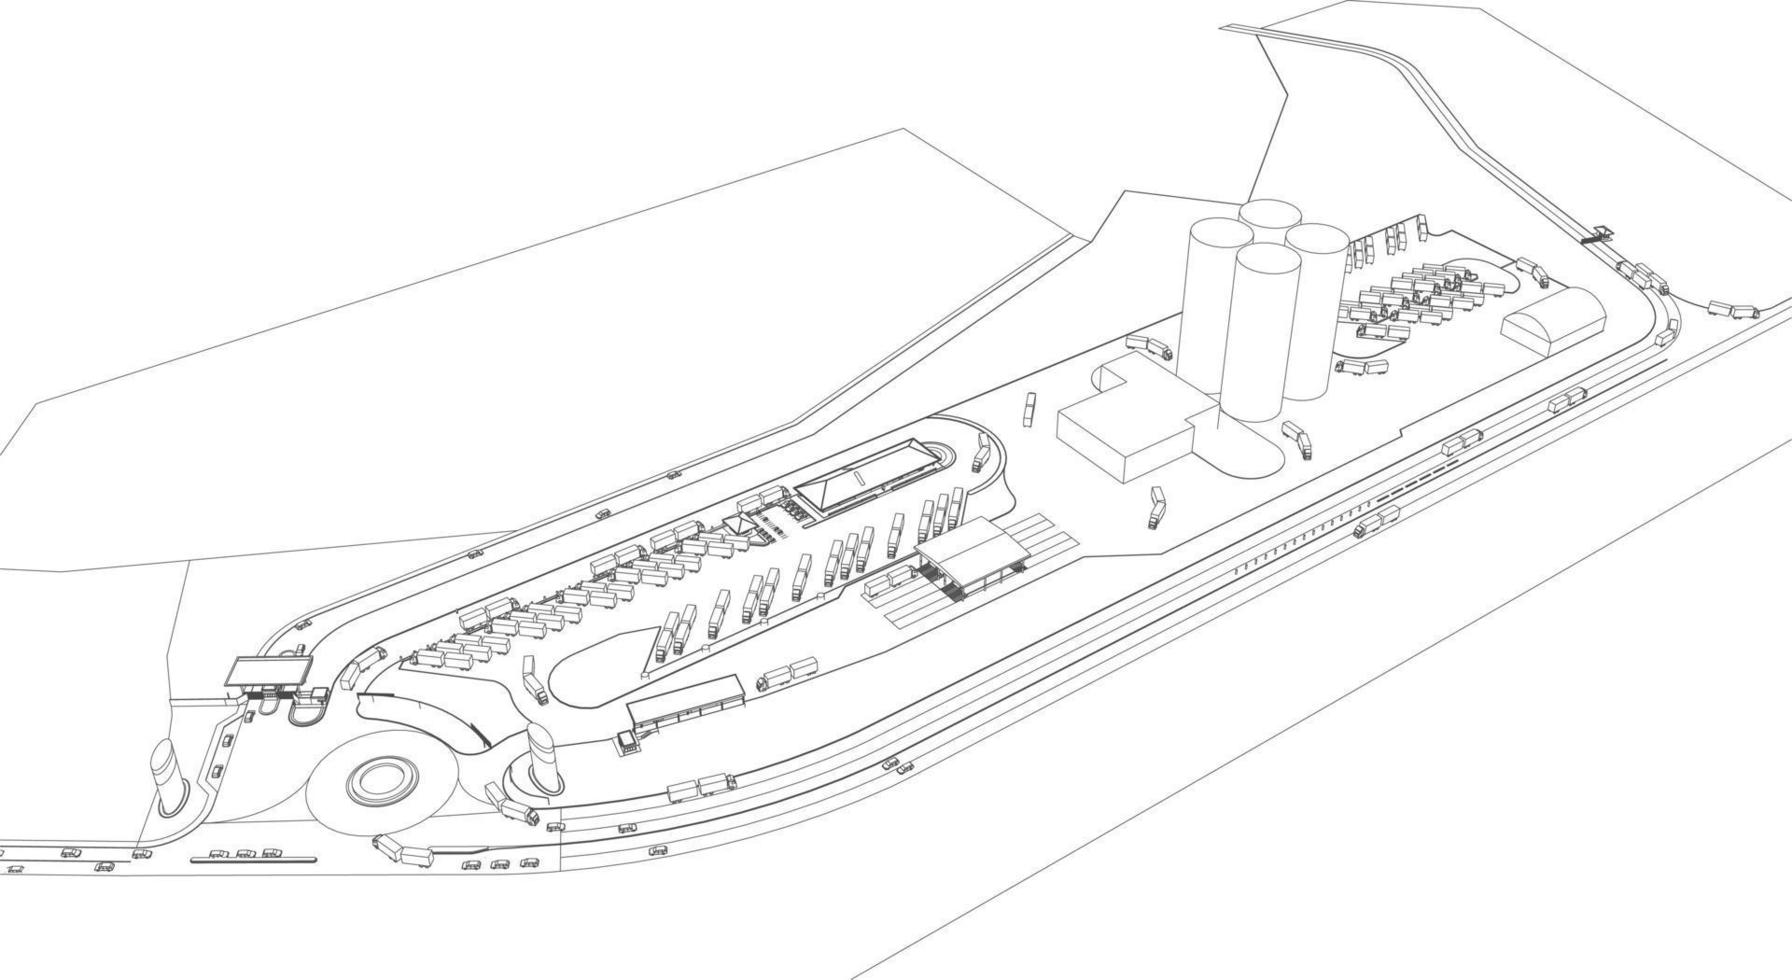 3d illustration du projet de construction vecteur